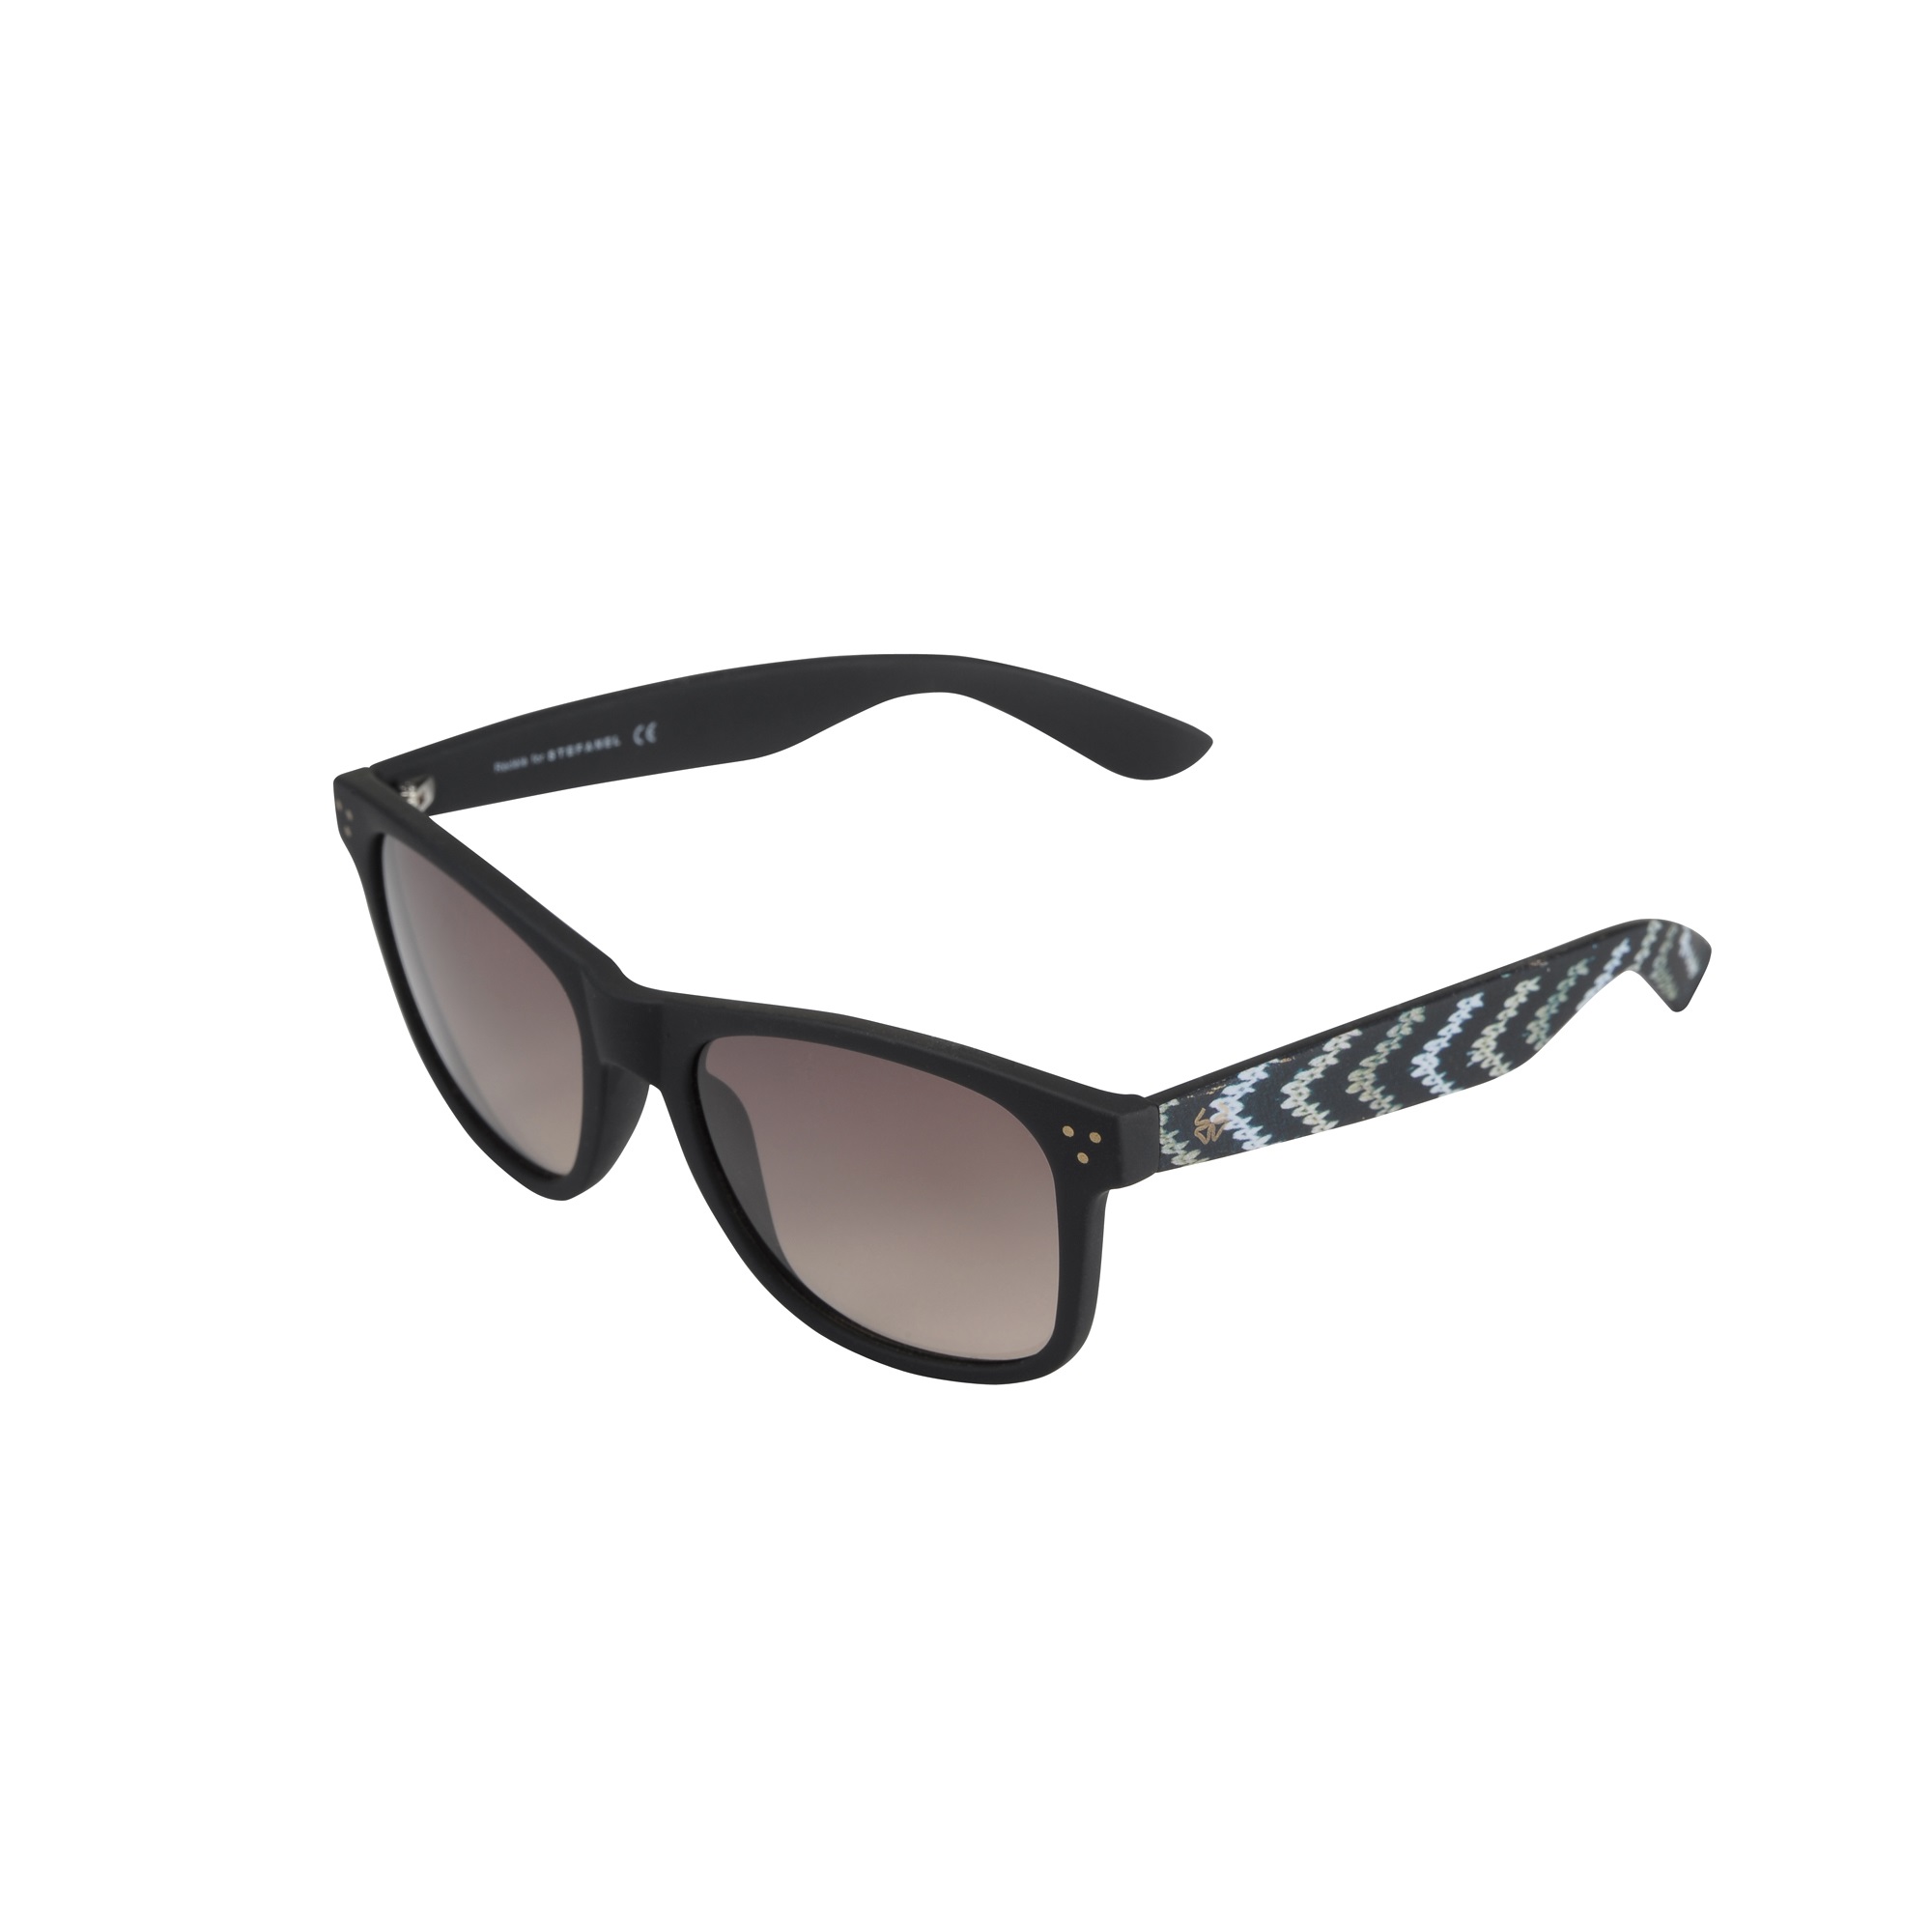 Stefanel accessori: Rédélé For Stefanel, la collezione di occhiali da sole per la primavera estate 2015